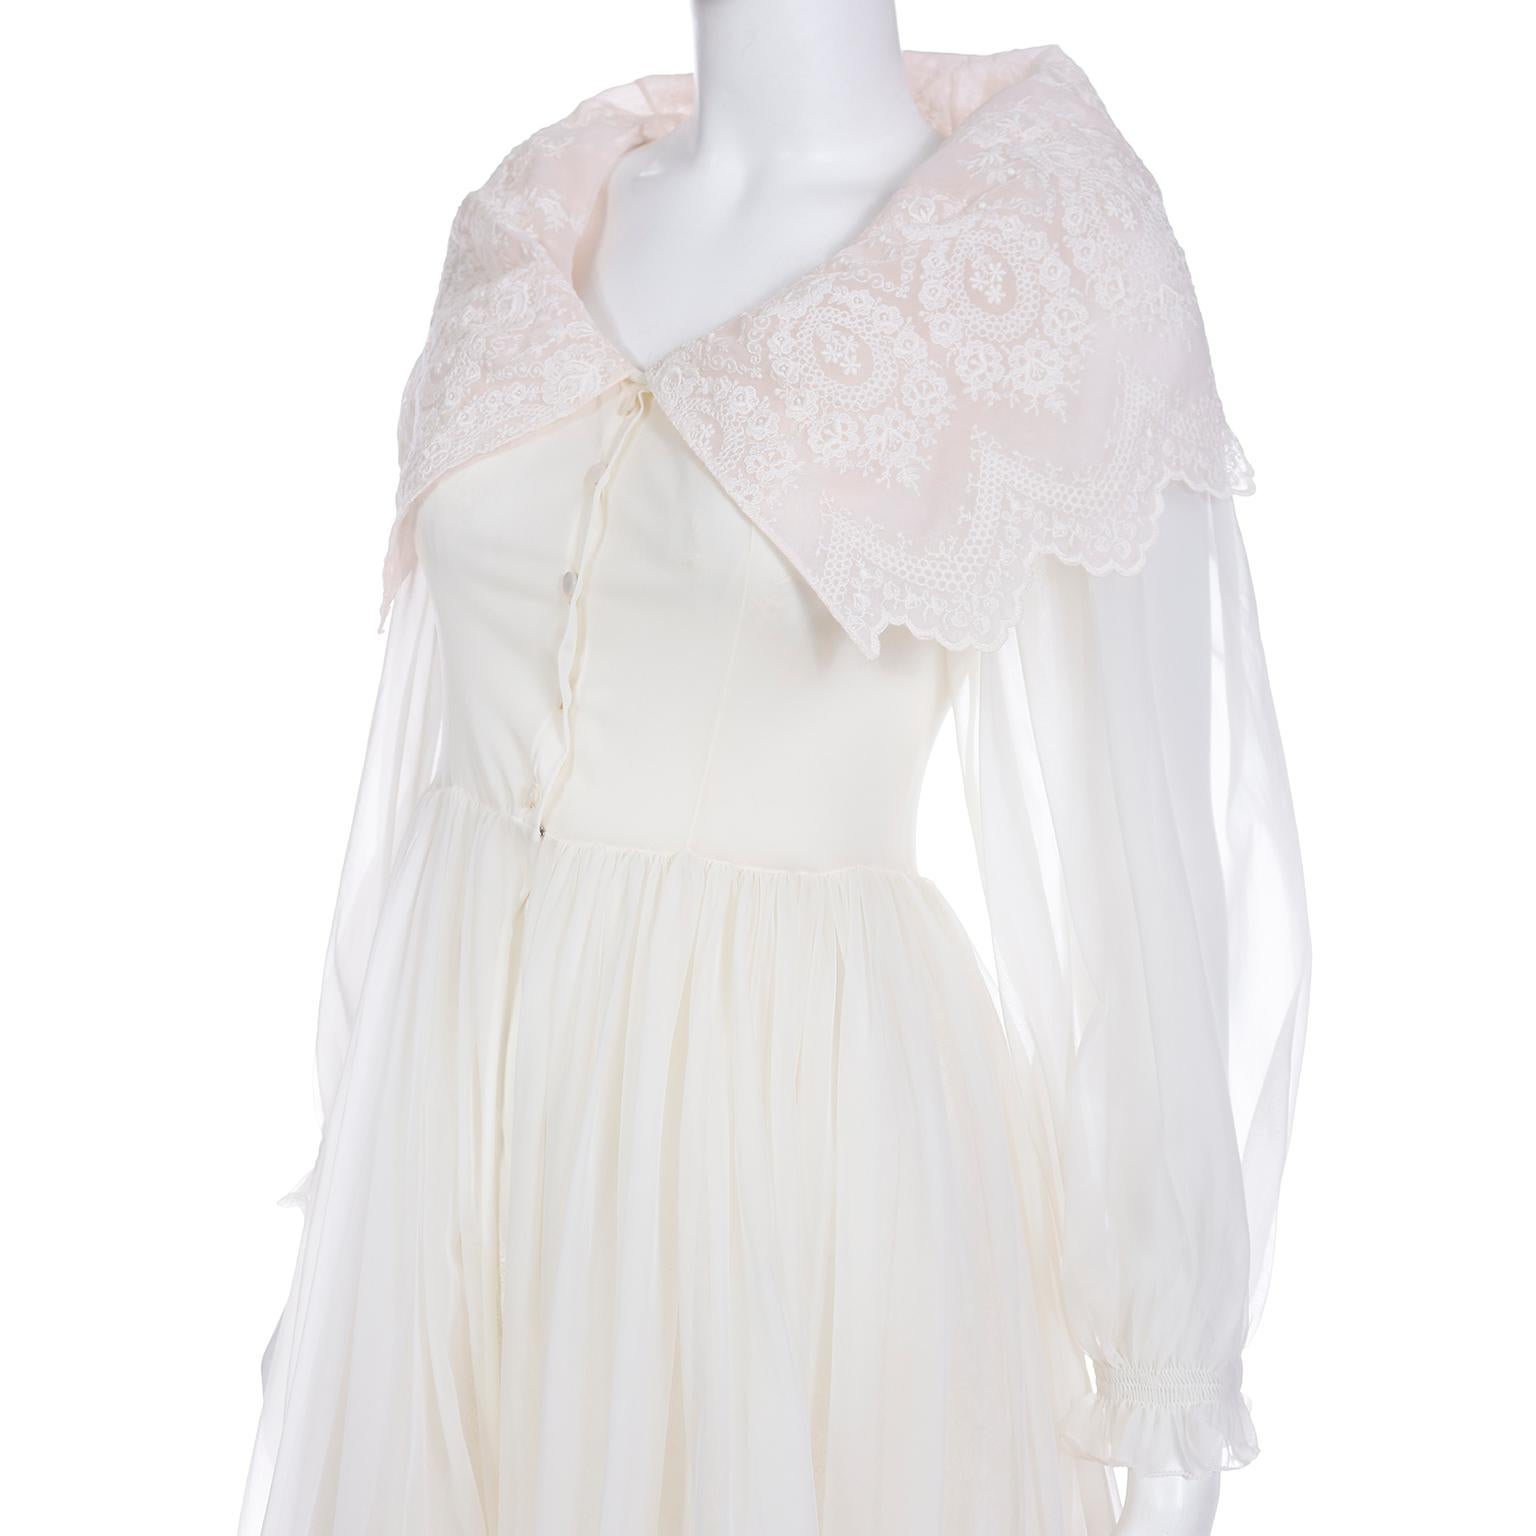 Women's Schiaparelli 1950s Vintage Ivory & Pink Peignoir Robe & Nightgown w Eyelet Lace